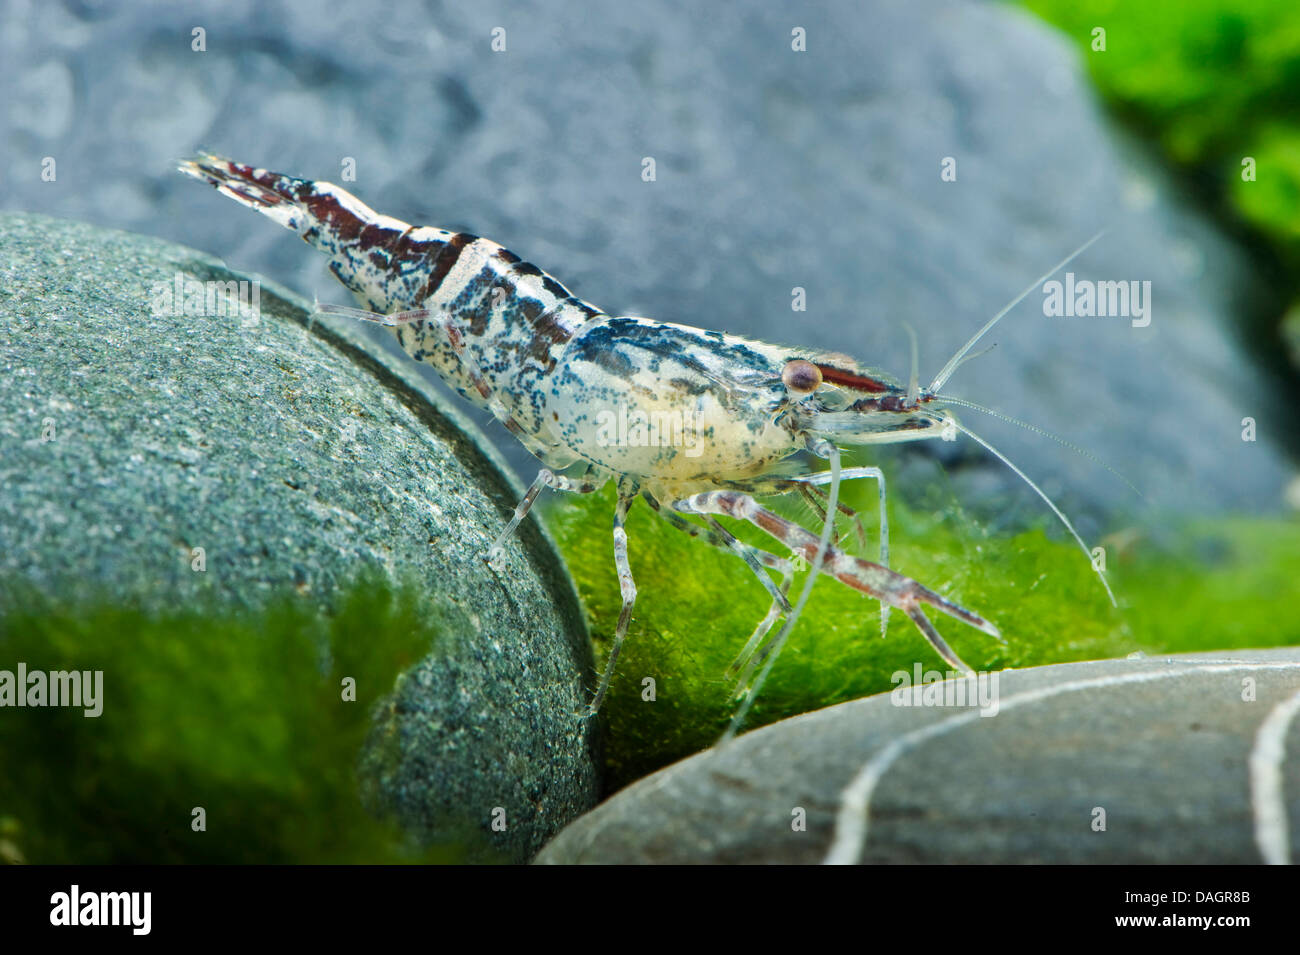 freshwater shrimp (Macrobrachium scabriculum), on the bottom of an aquarium Stock Photo